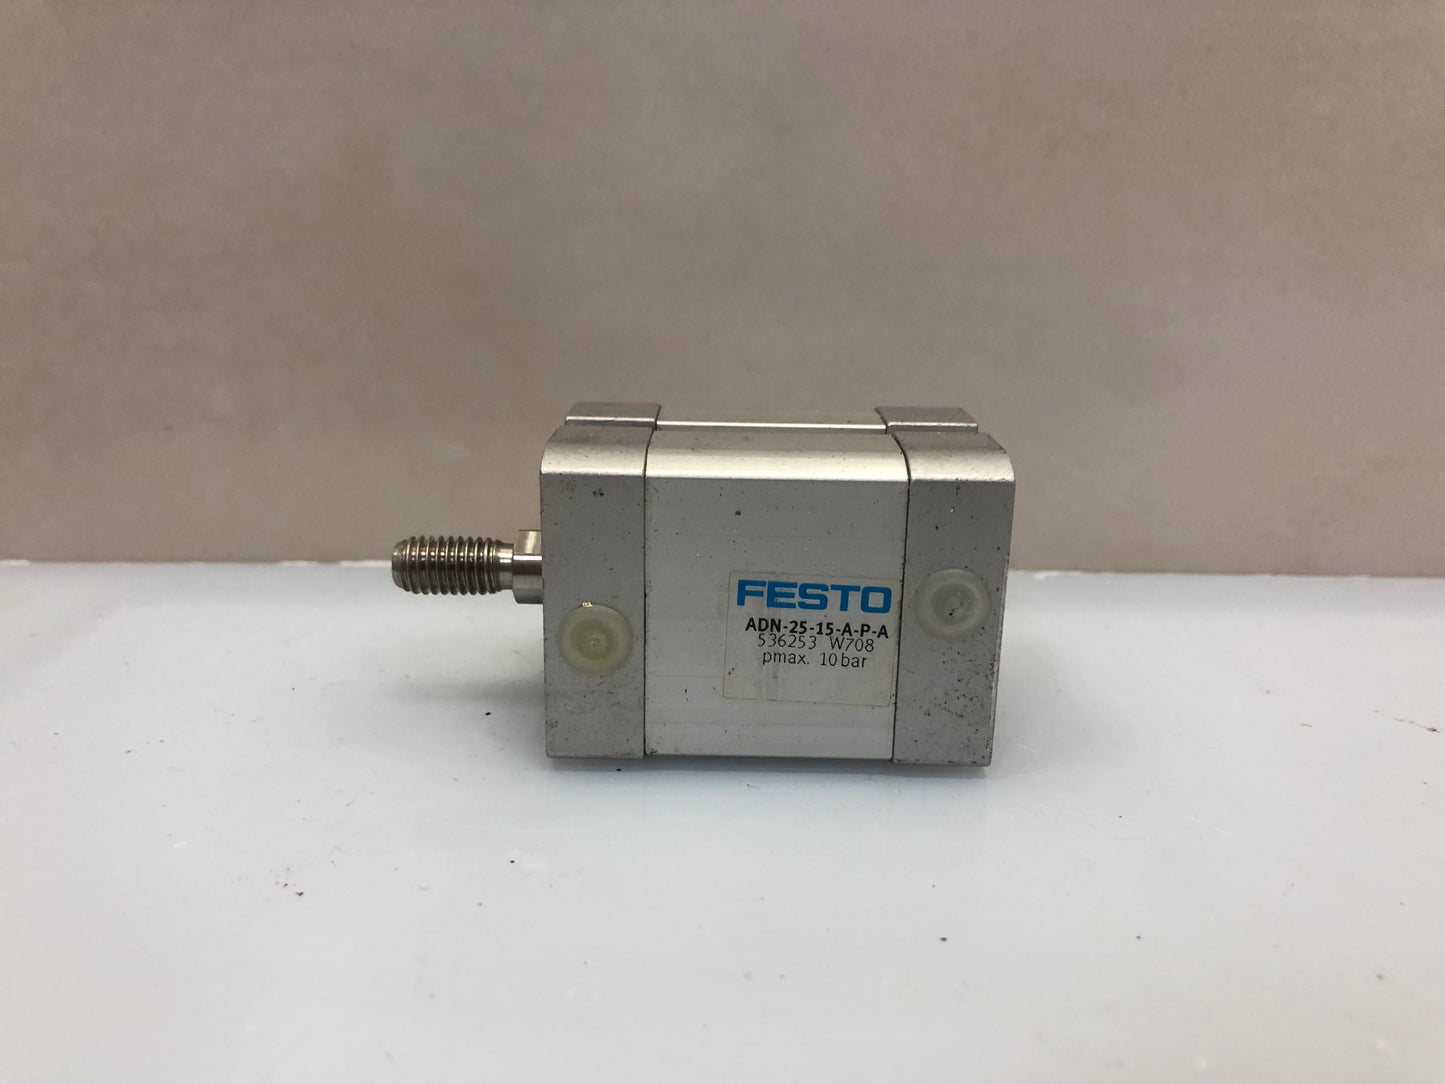 FESTO ADN-25-15-A-P-A 536253 Compact Air Cylinder